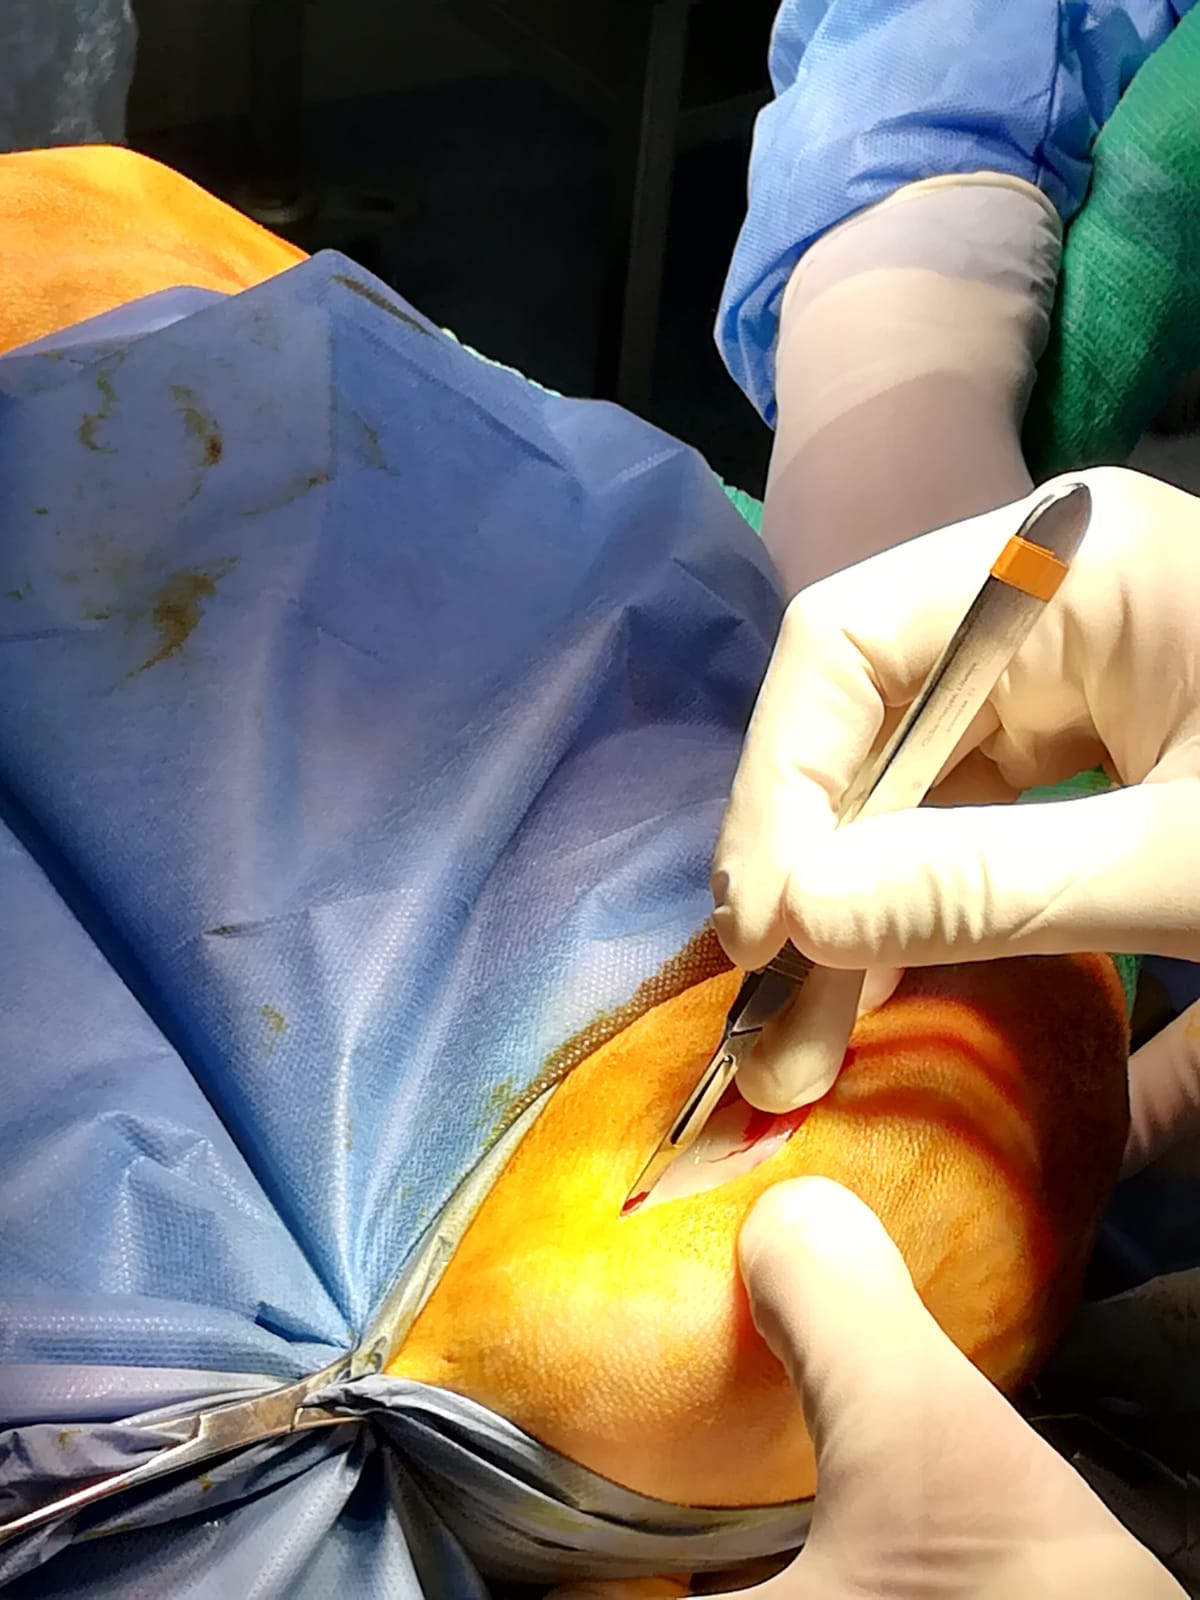 Técnica quirúrgica - lesión condral